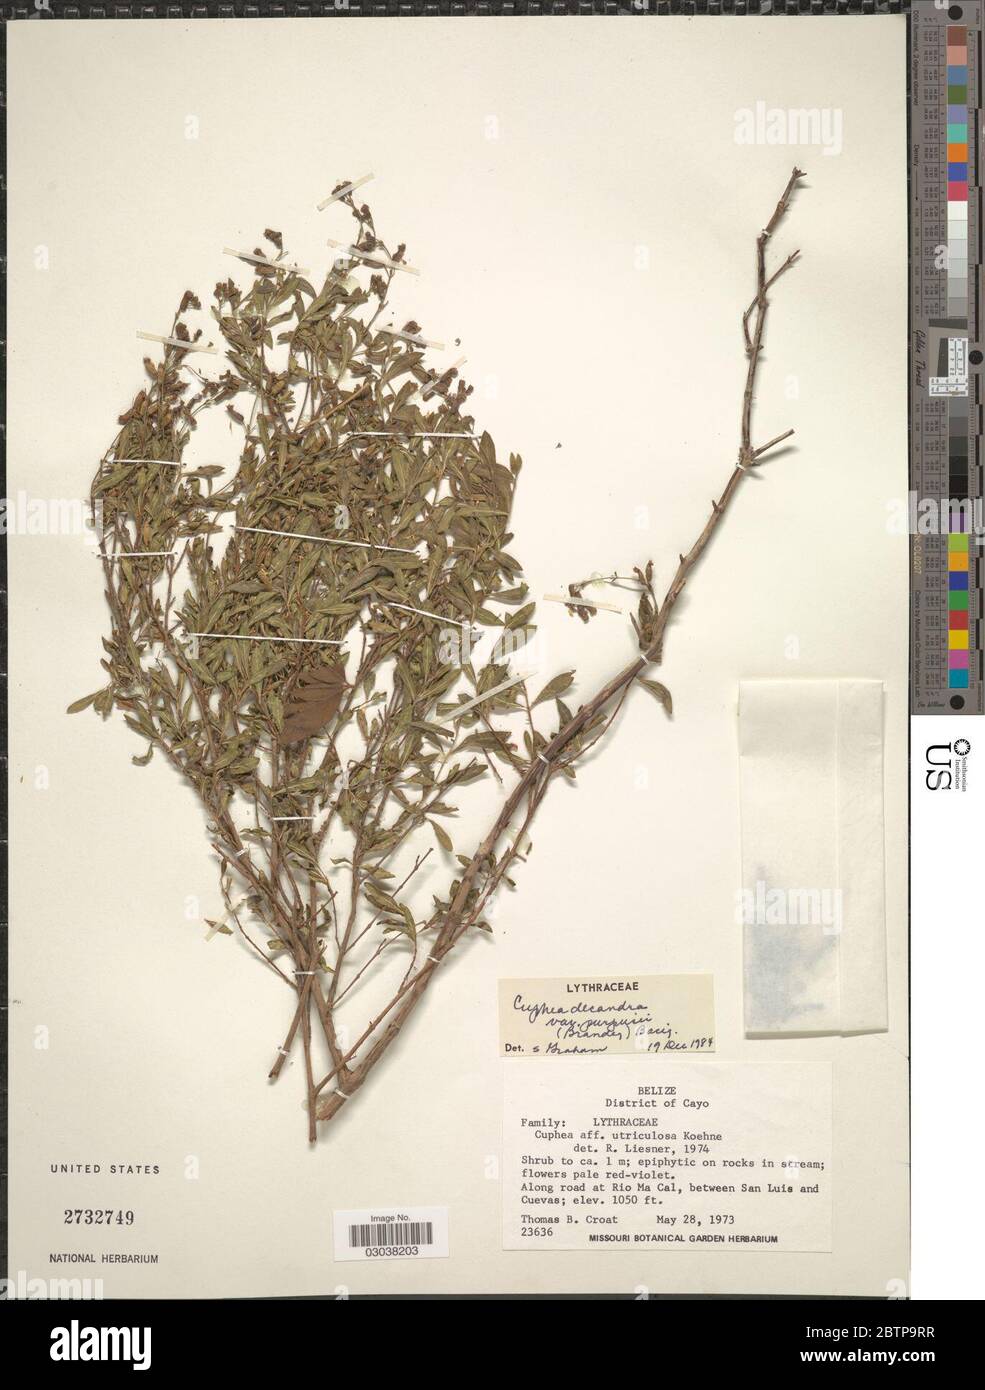 Cuphea decandra var purpusii Brandegee Bacig. Stock Photo